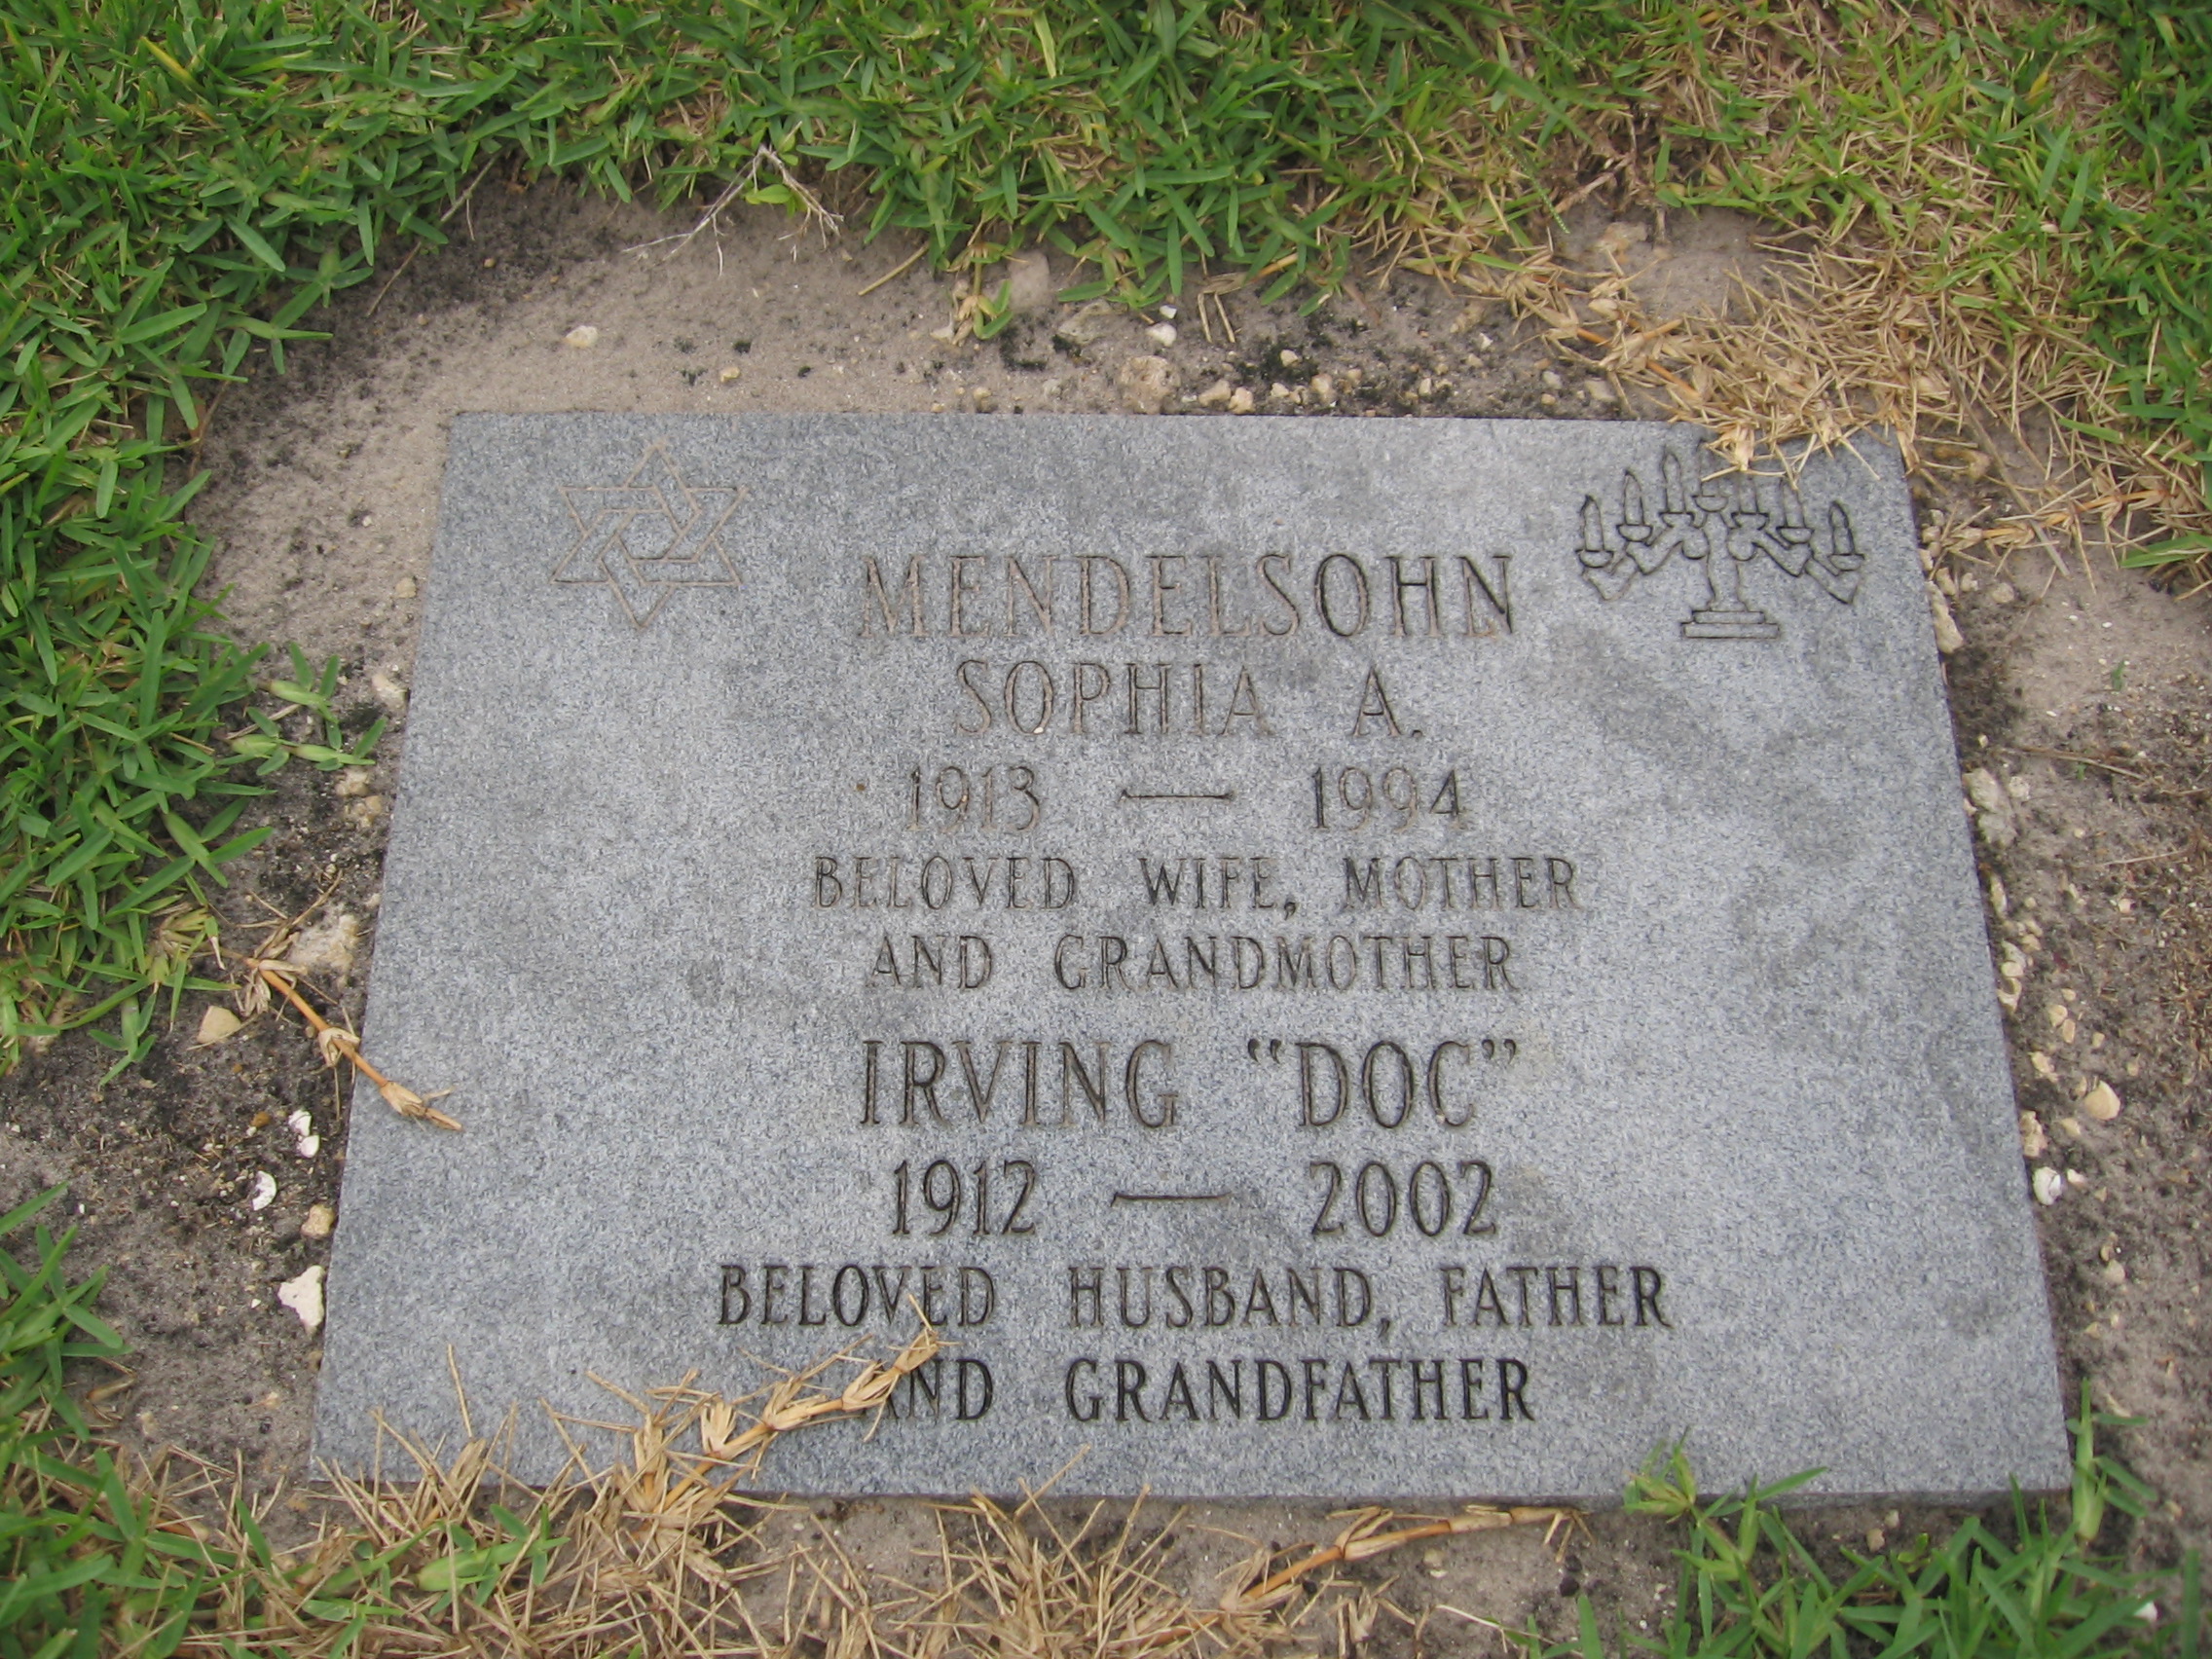 Irving "Doc" Mendelsohn